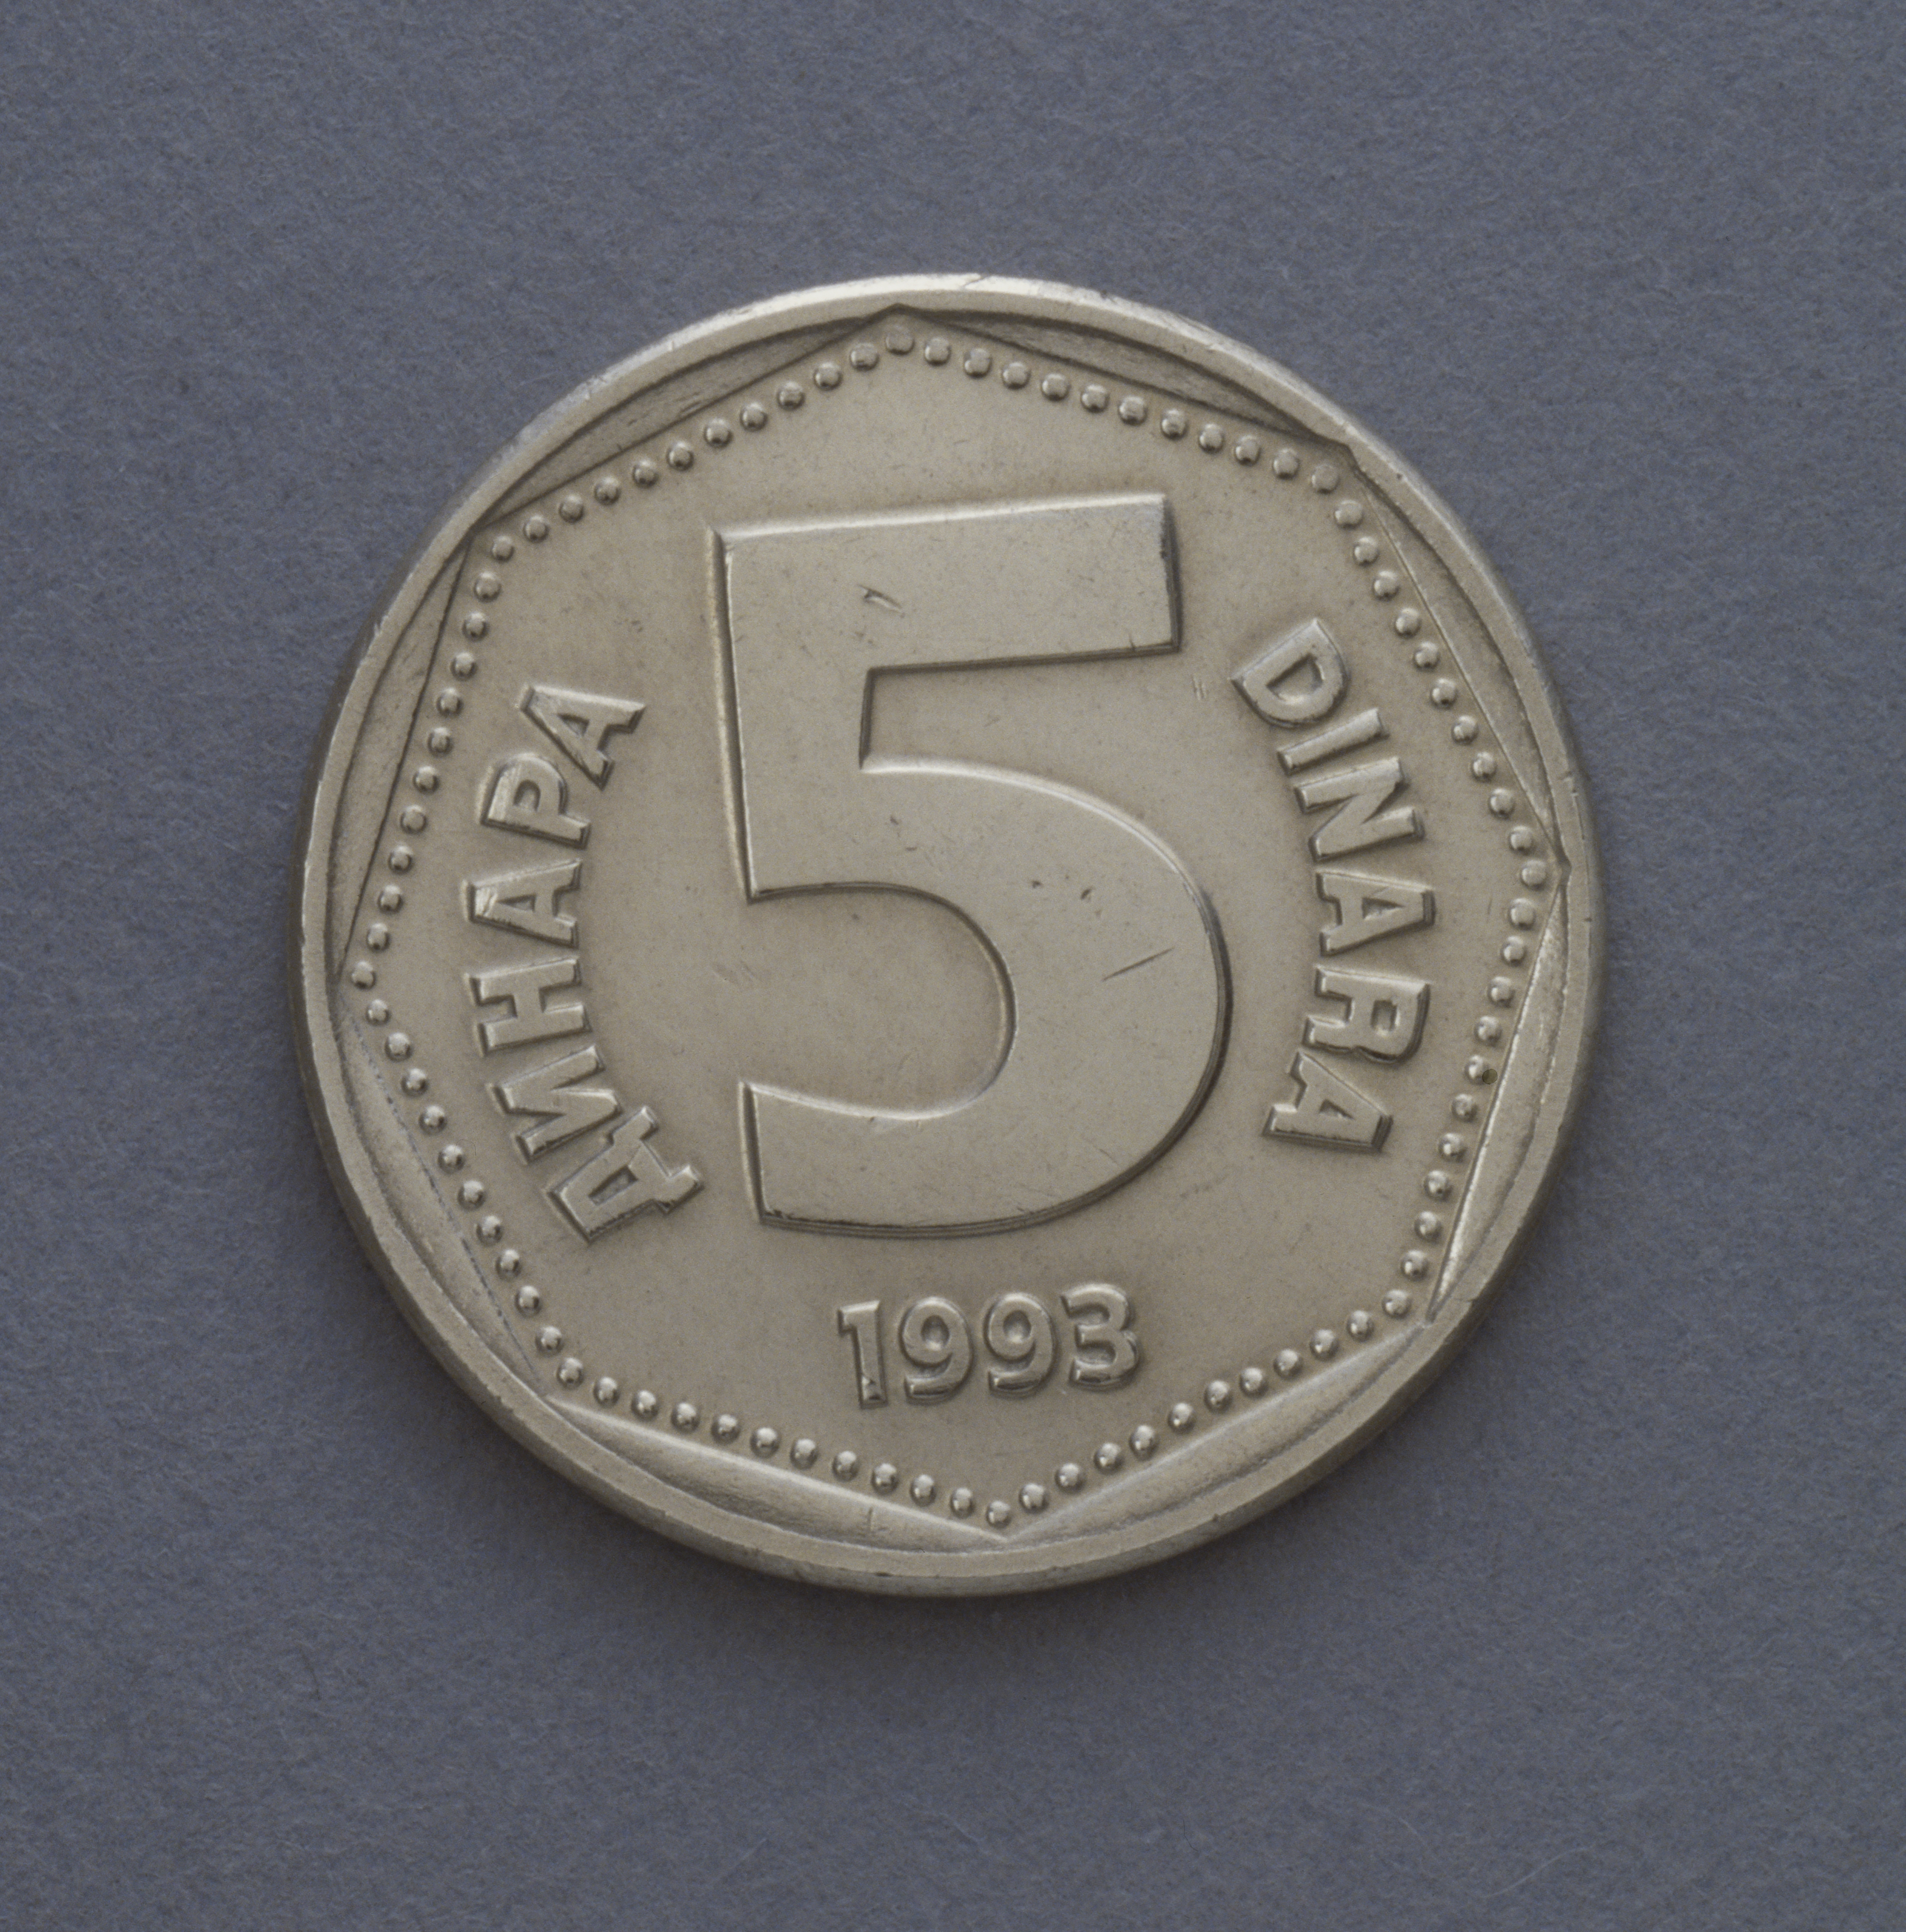 5 dinara coin...